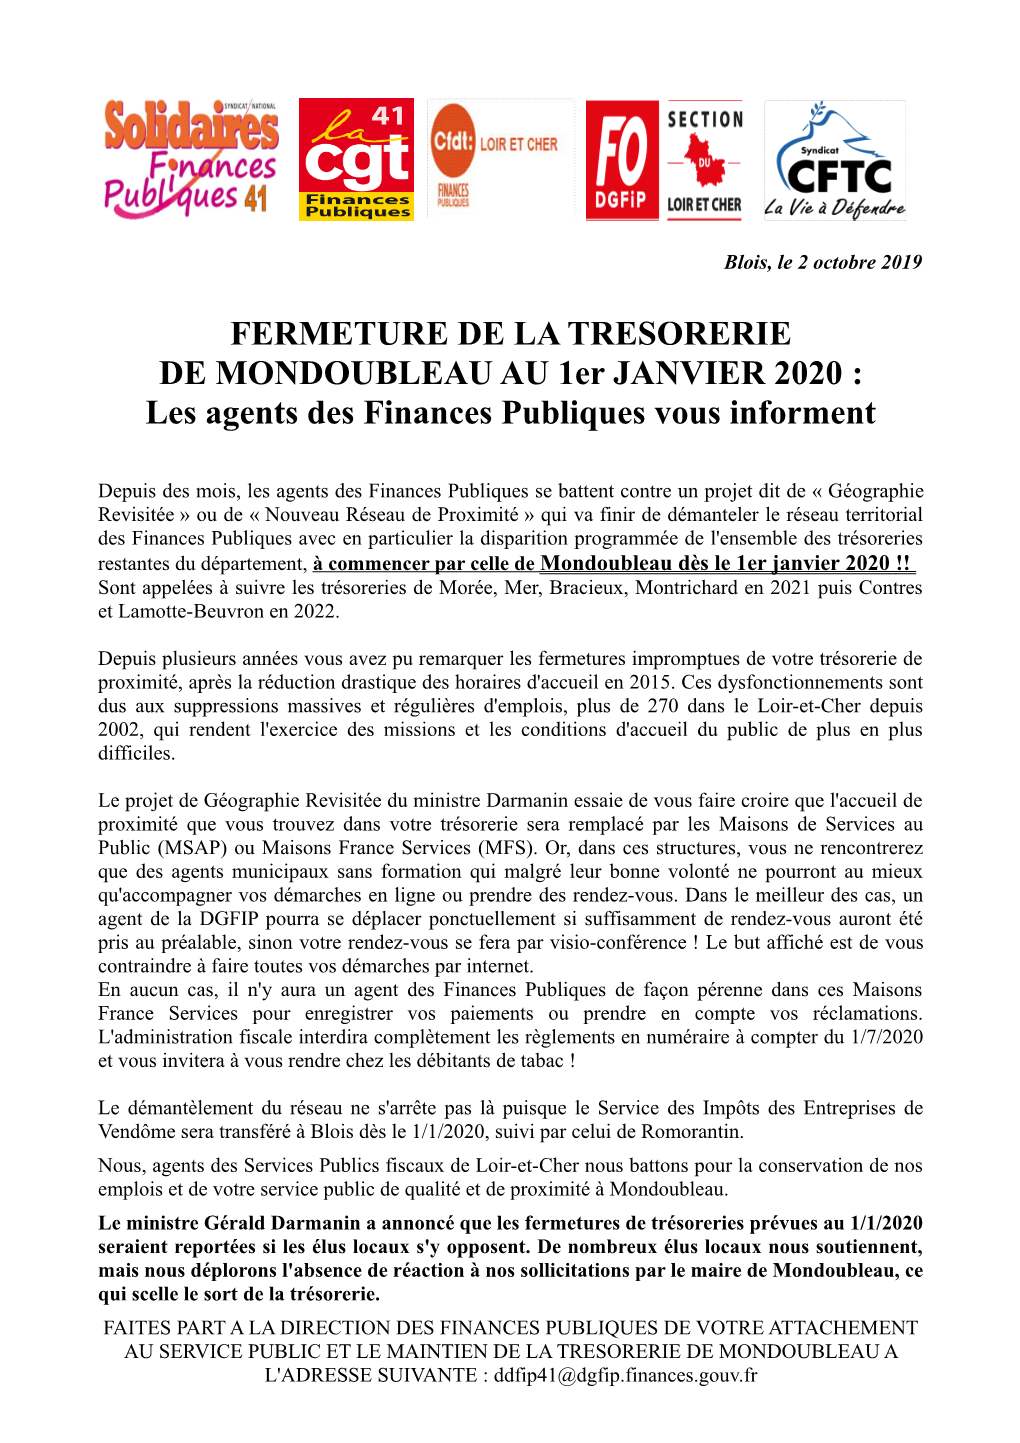 FERMETURE DE LA TRESORERIE DE MONDOUBLEAU AU 1Er JANVIER 2020 : Les Agents Des Finances Publiques Vous Informent